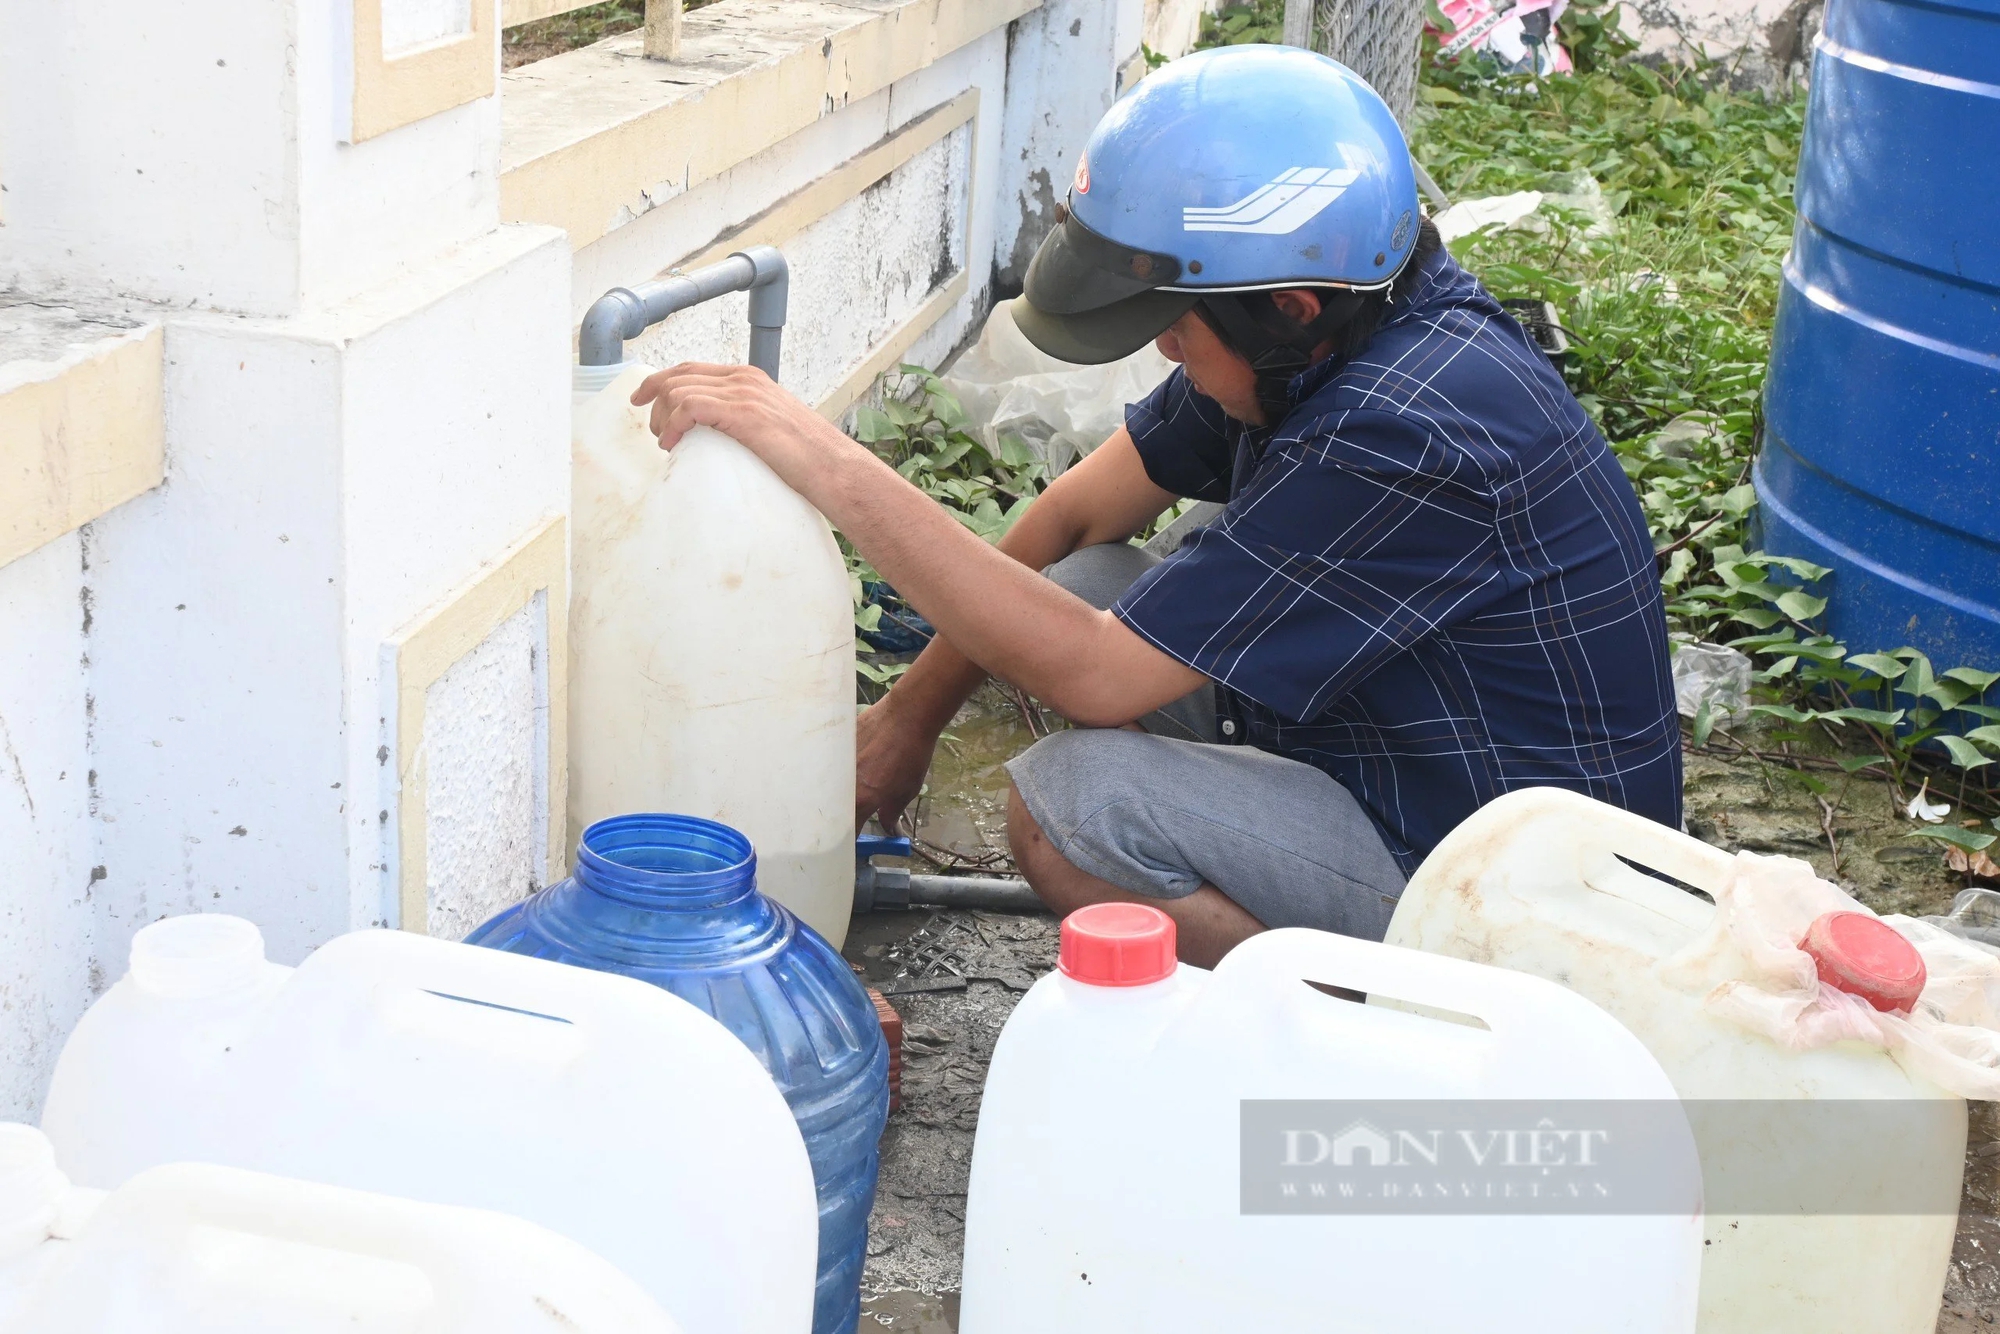 Mùa khô bất ổn ở Đồng bằng sông Cửu Long: Thiếu nước sinh hoạt, một tỉnh công bố tình huống khẩn cấp (Bài 2)- Ảnh 3.